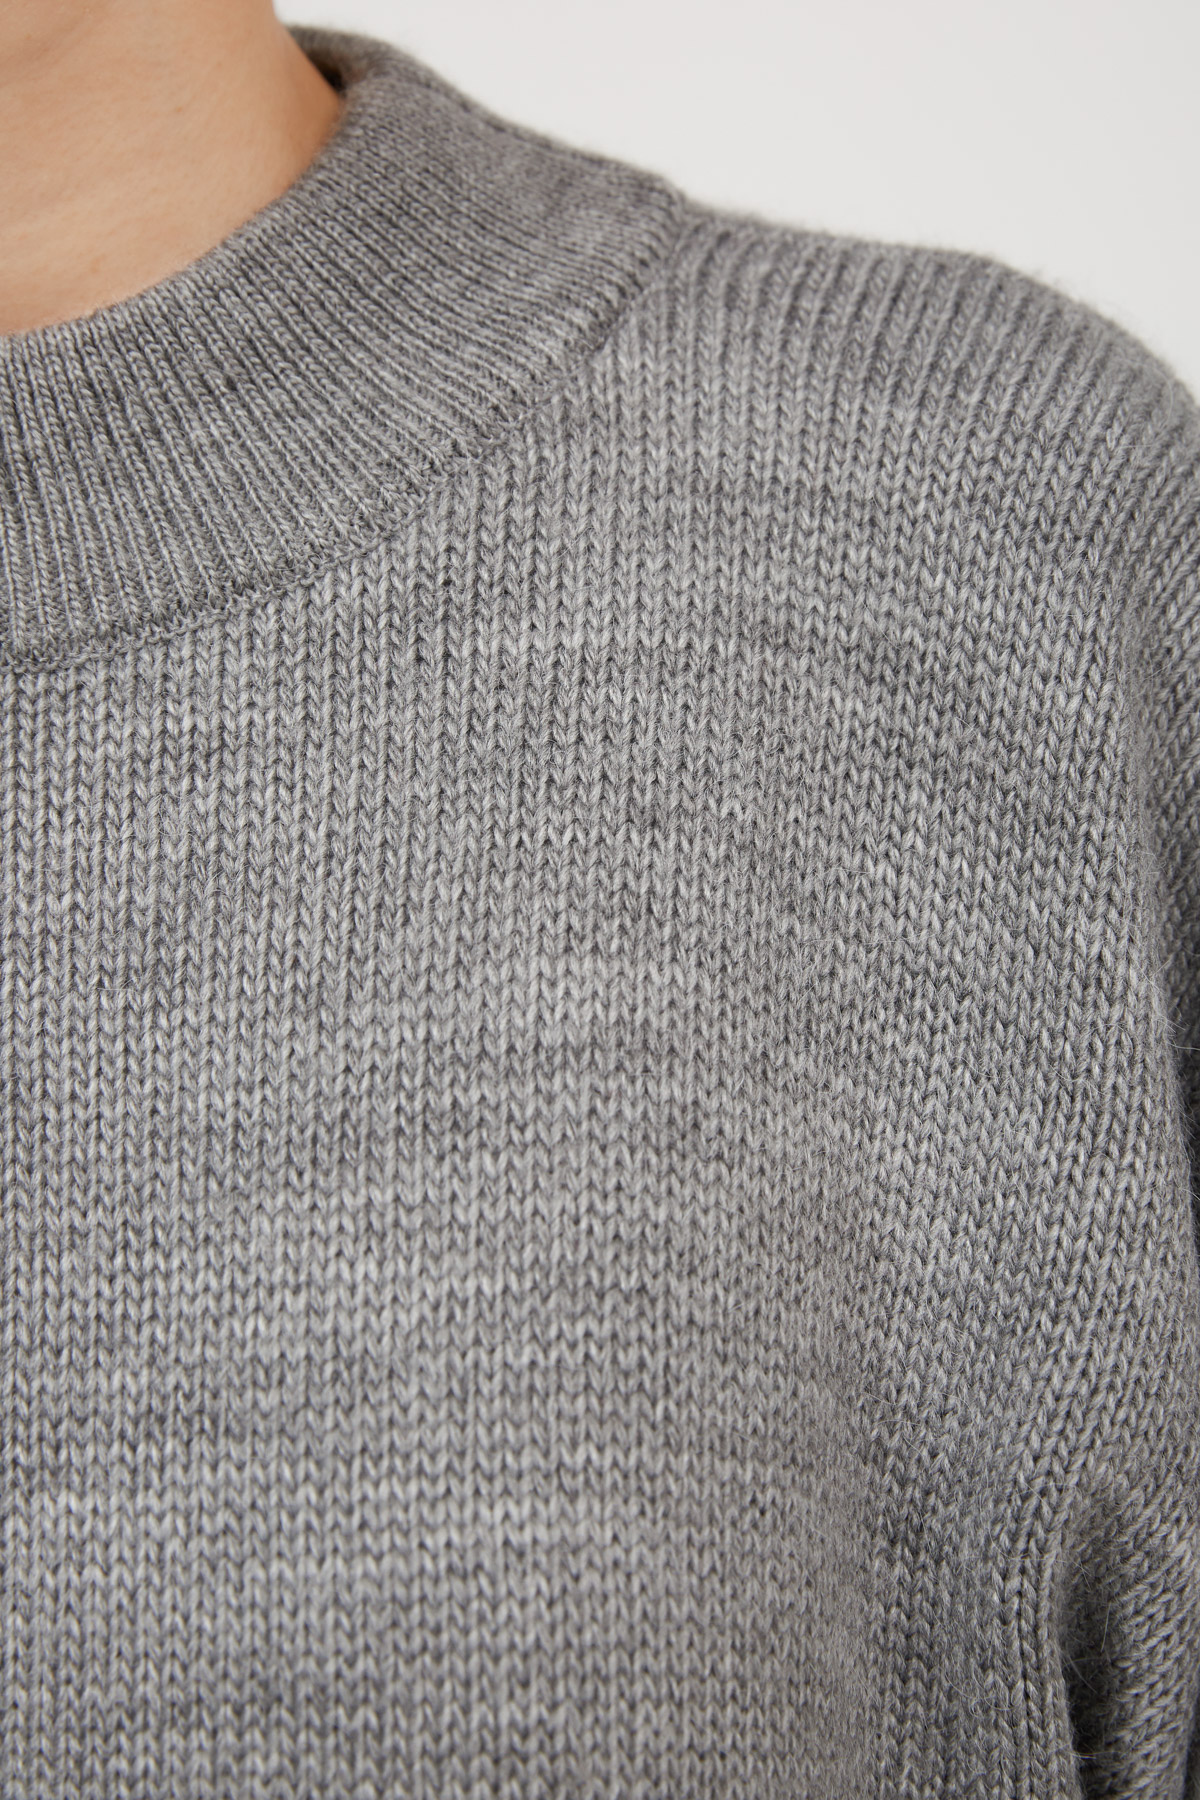 Gray knit sweater, photo 4